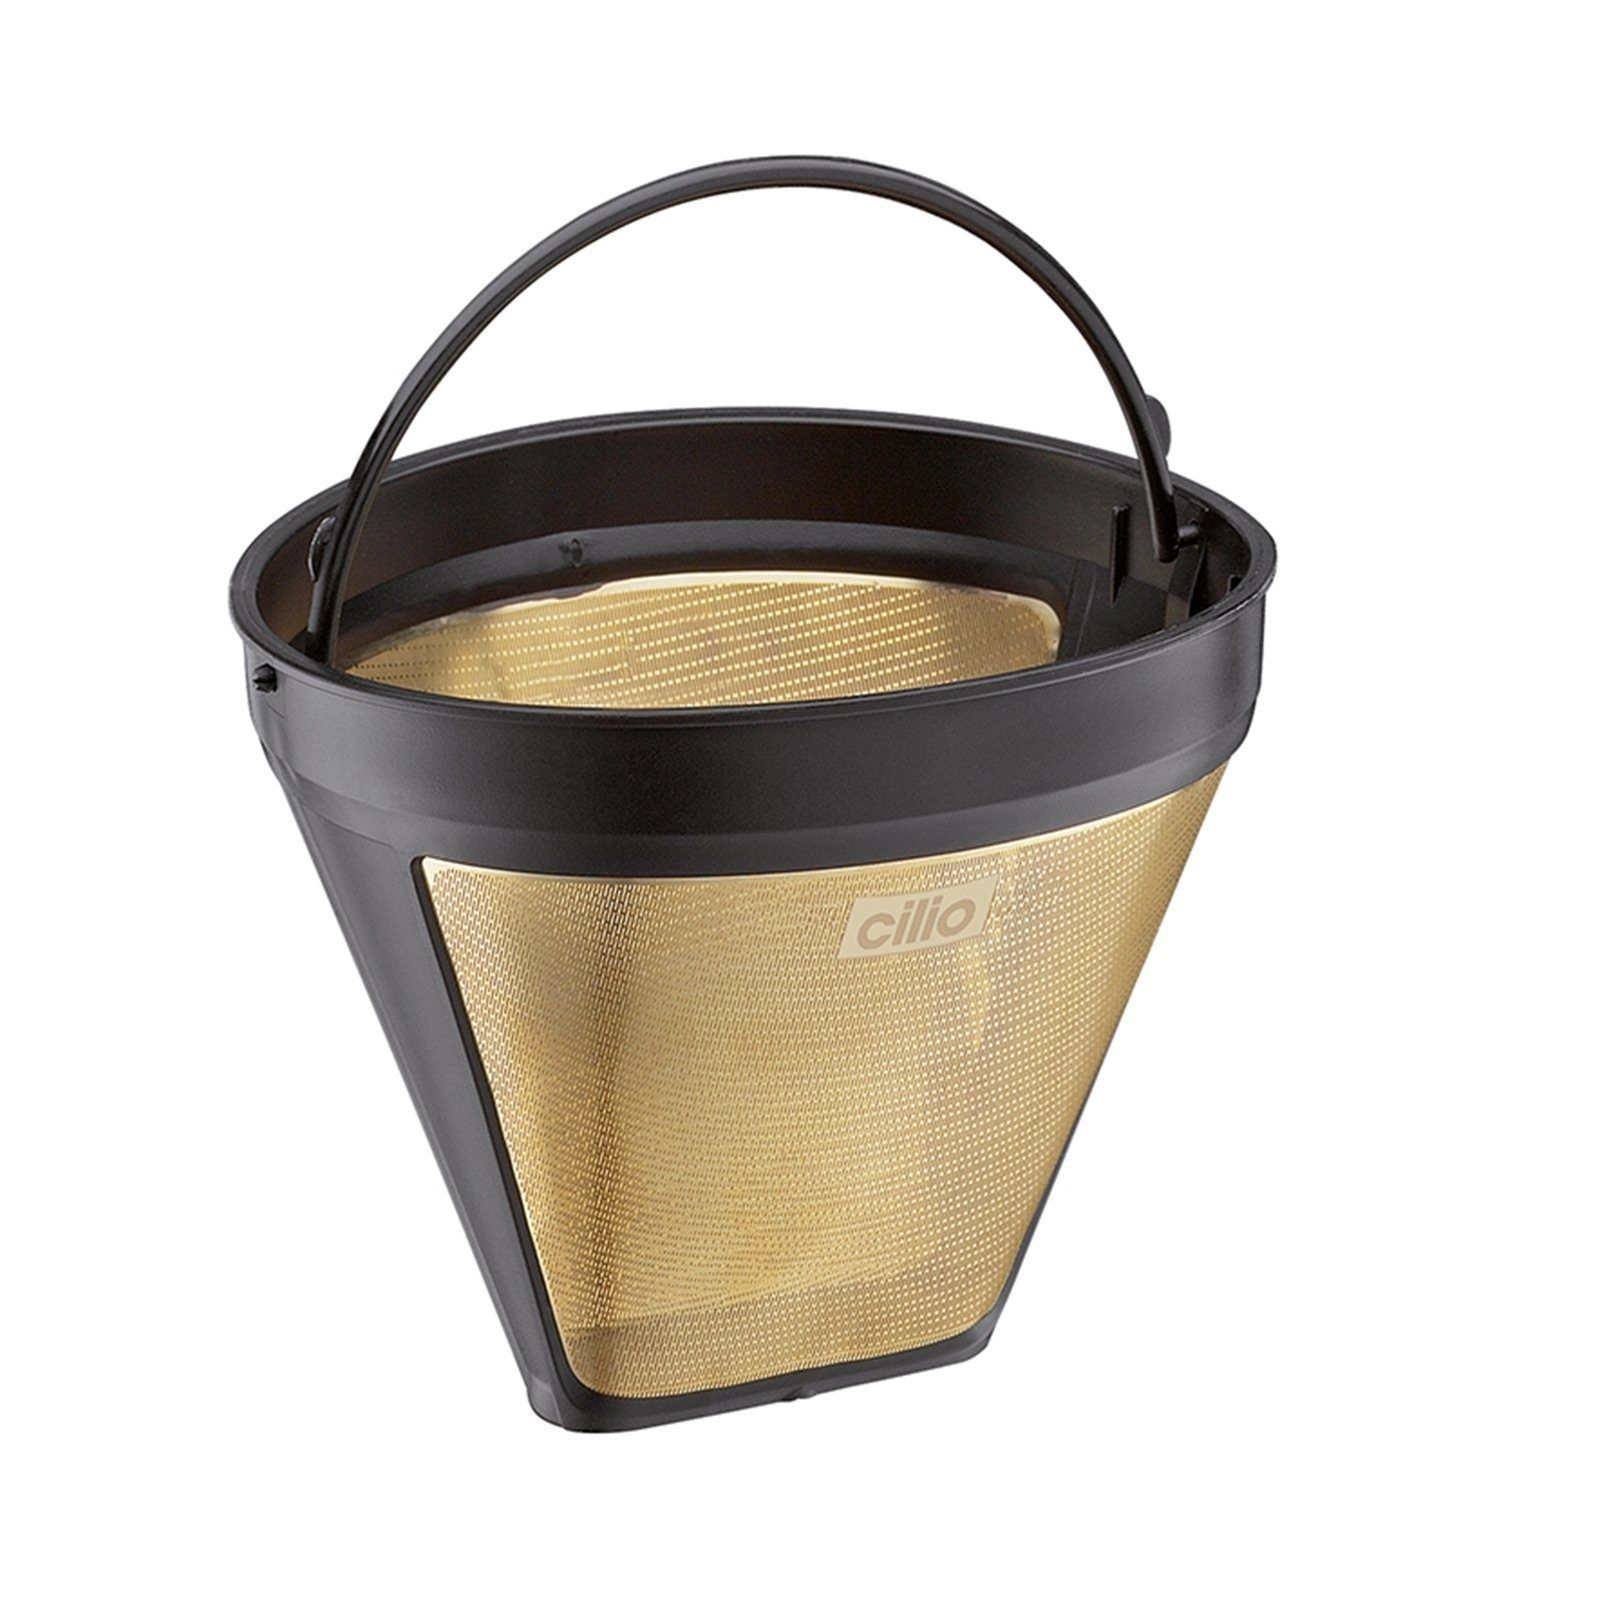 Фильтр gold. Kaffeefilter 1x4 Standard eu. Фильтр для кофеварки. Фильтр для кофеварки 4 размер в см. Кофеварка фильтр кофе размер 2.